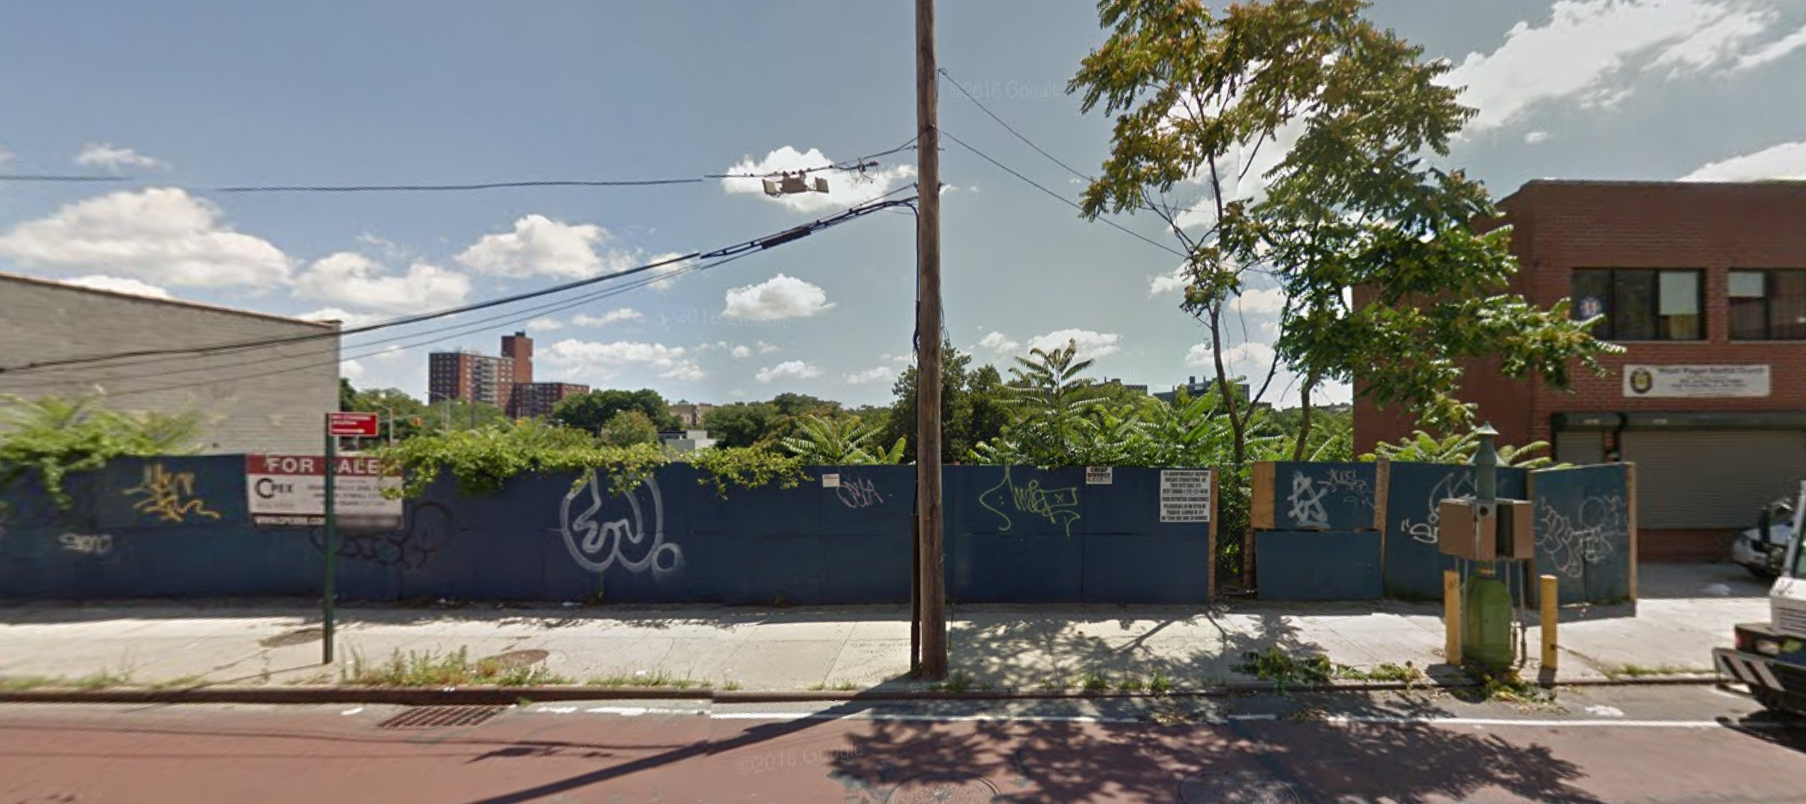 3466 Webster Avenue, image via Google Maps